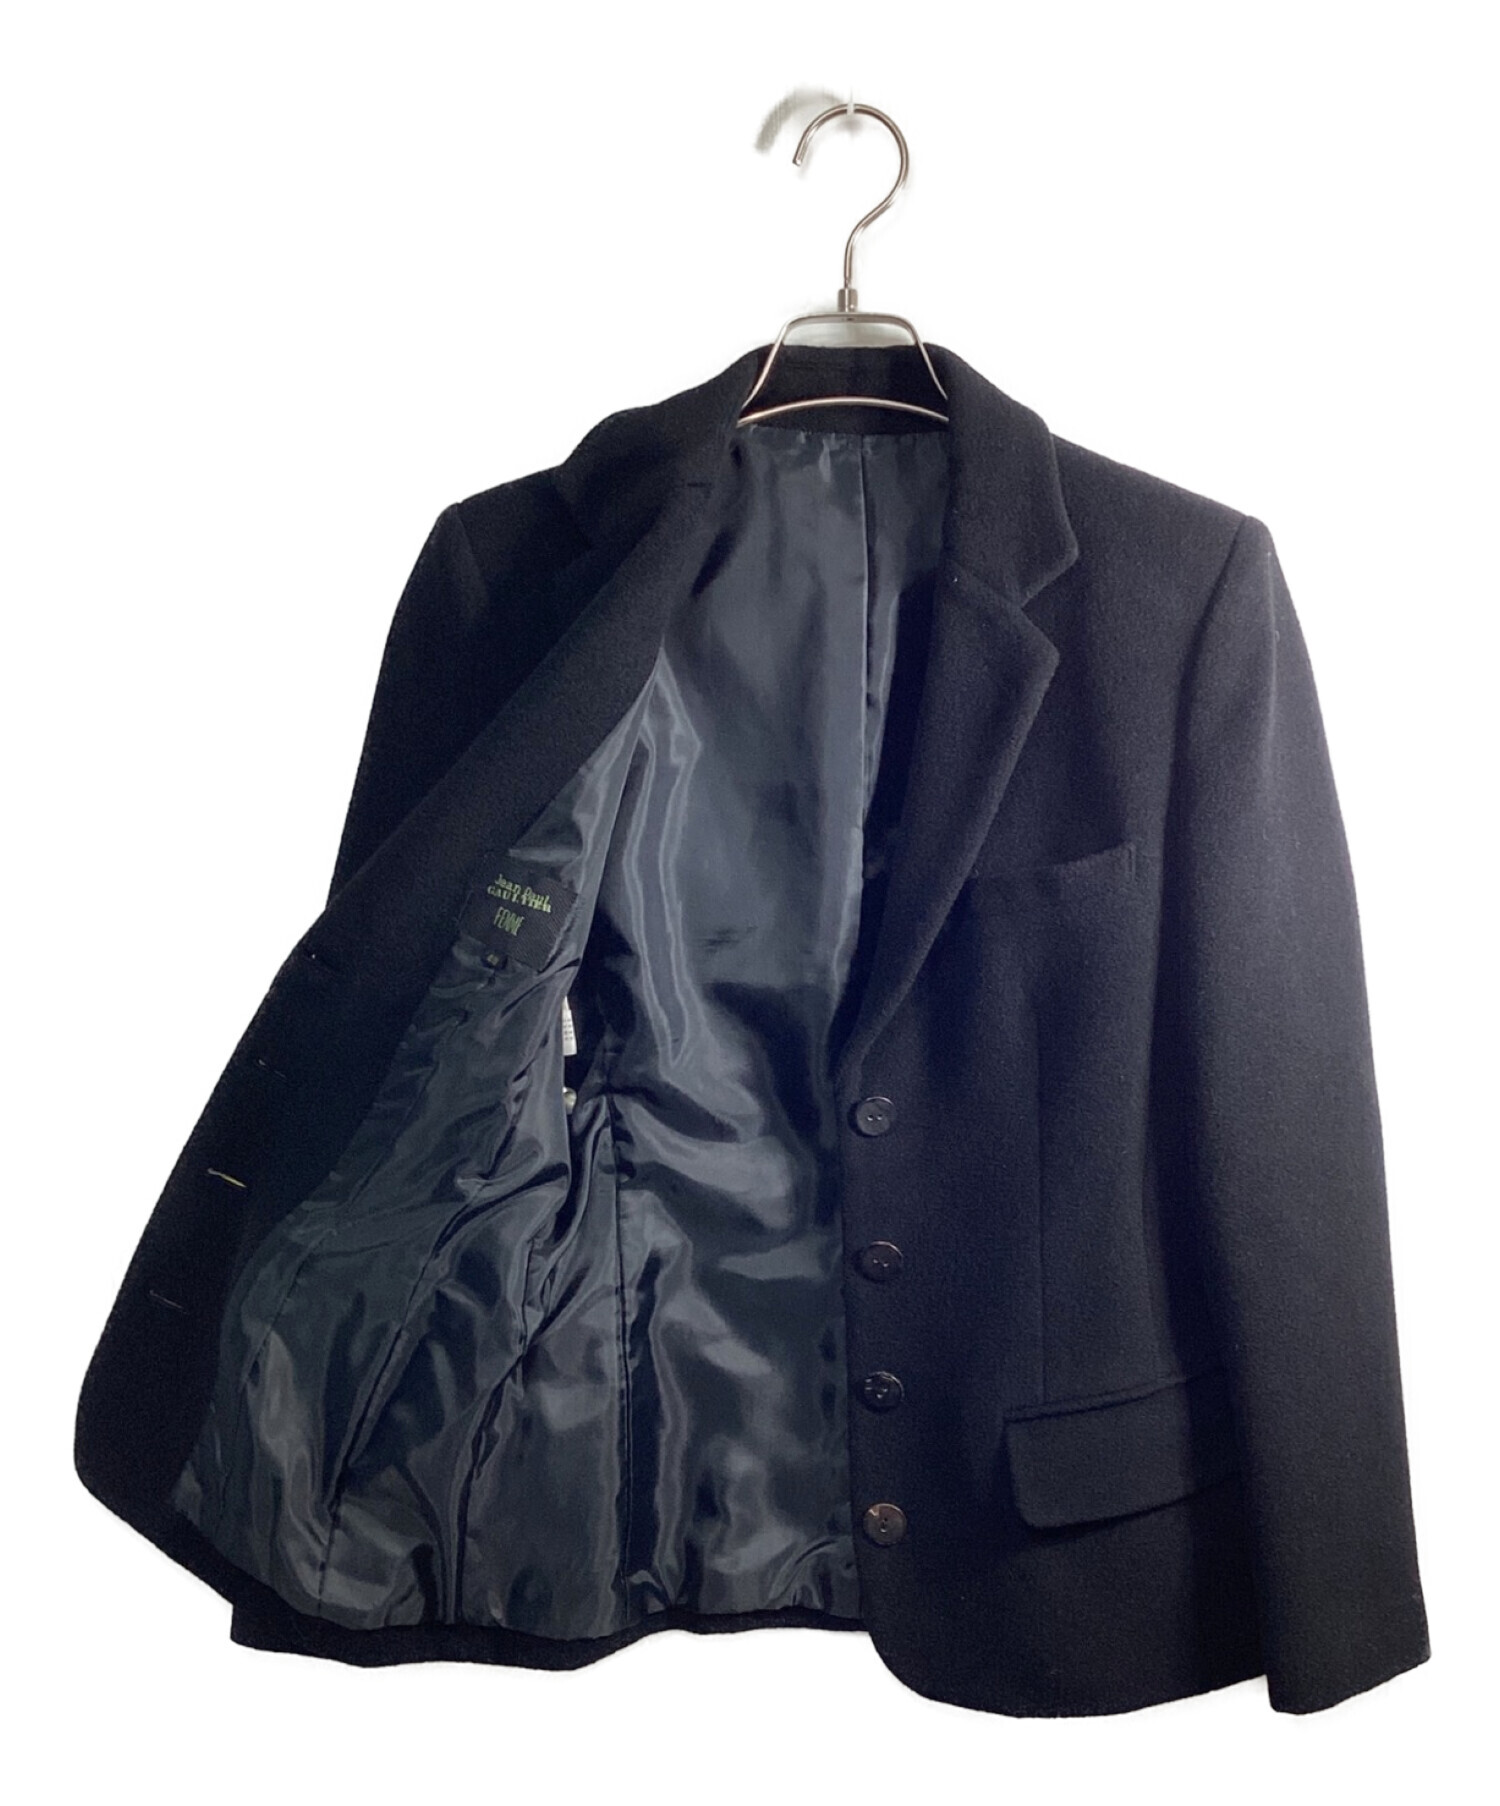 Jean Paul Gaultier FEMME (ジャンポールゴルチェフェム) ウールテーラードジャケット ブラック サイズ:40